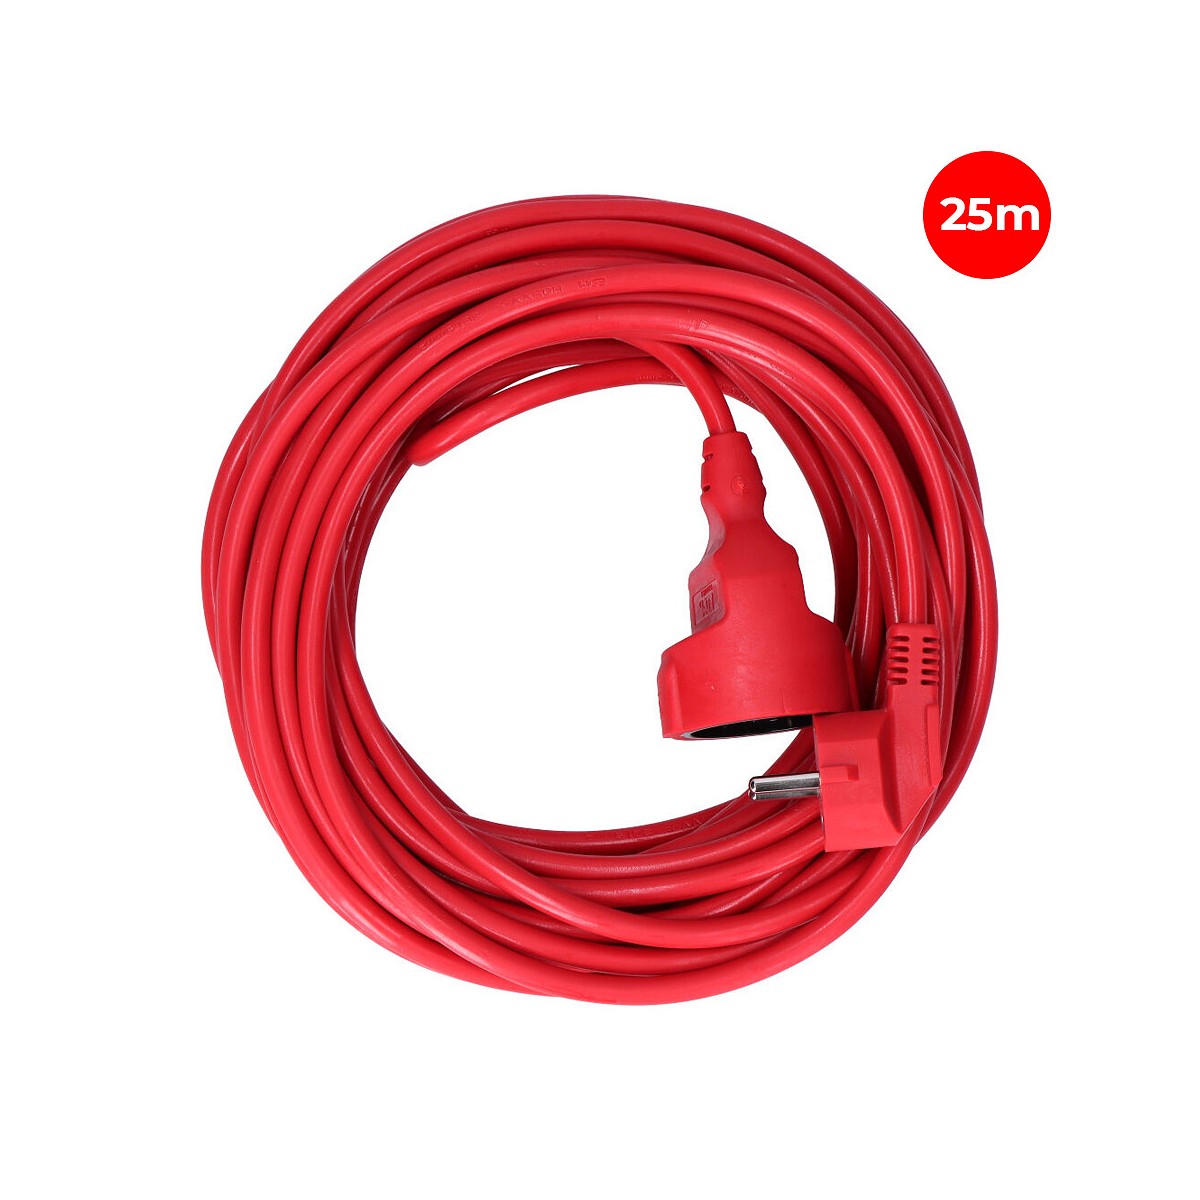 Prolongacion manguera t/tl 25m 3x1,5mm flexible roja edm